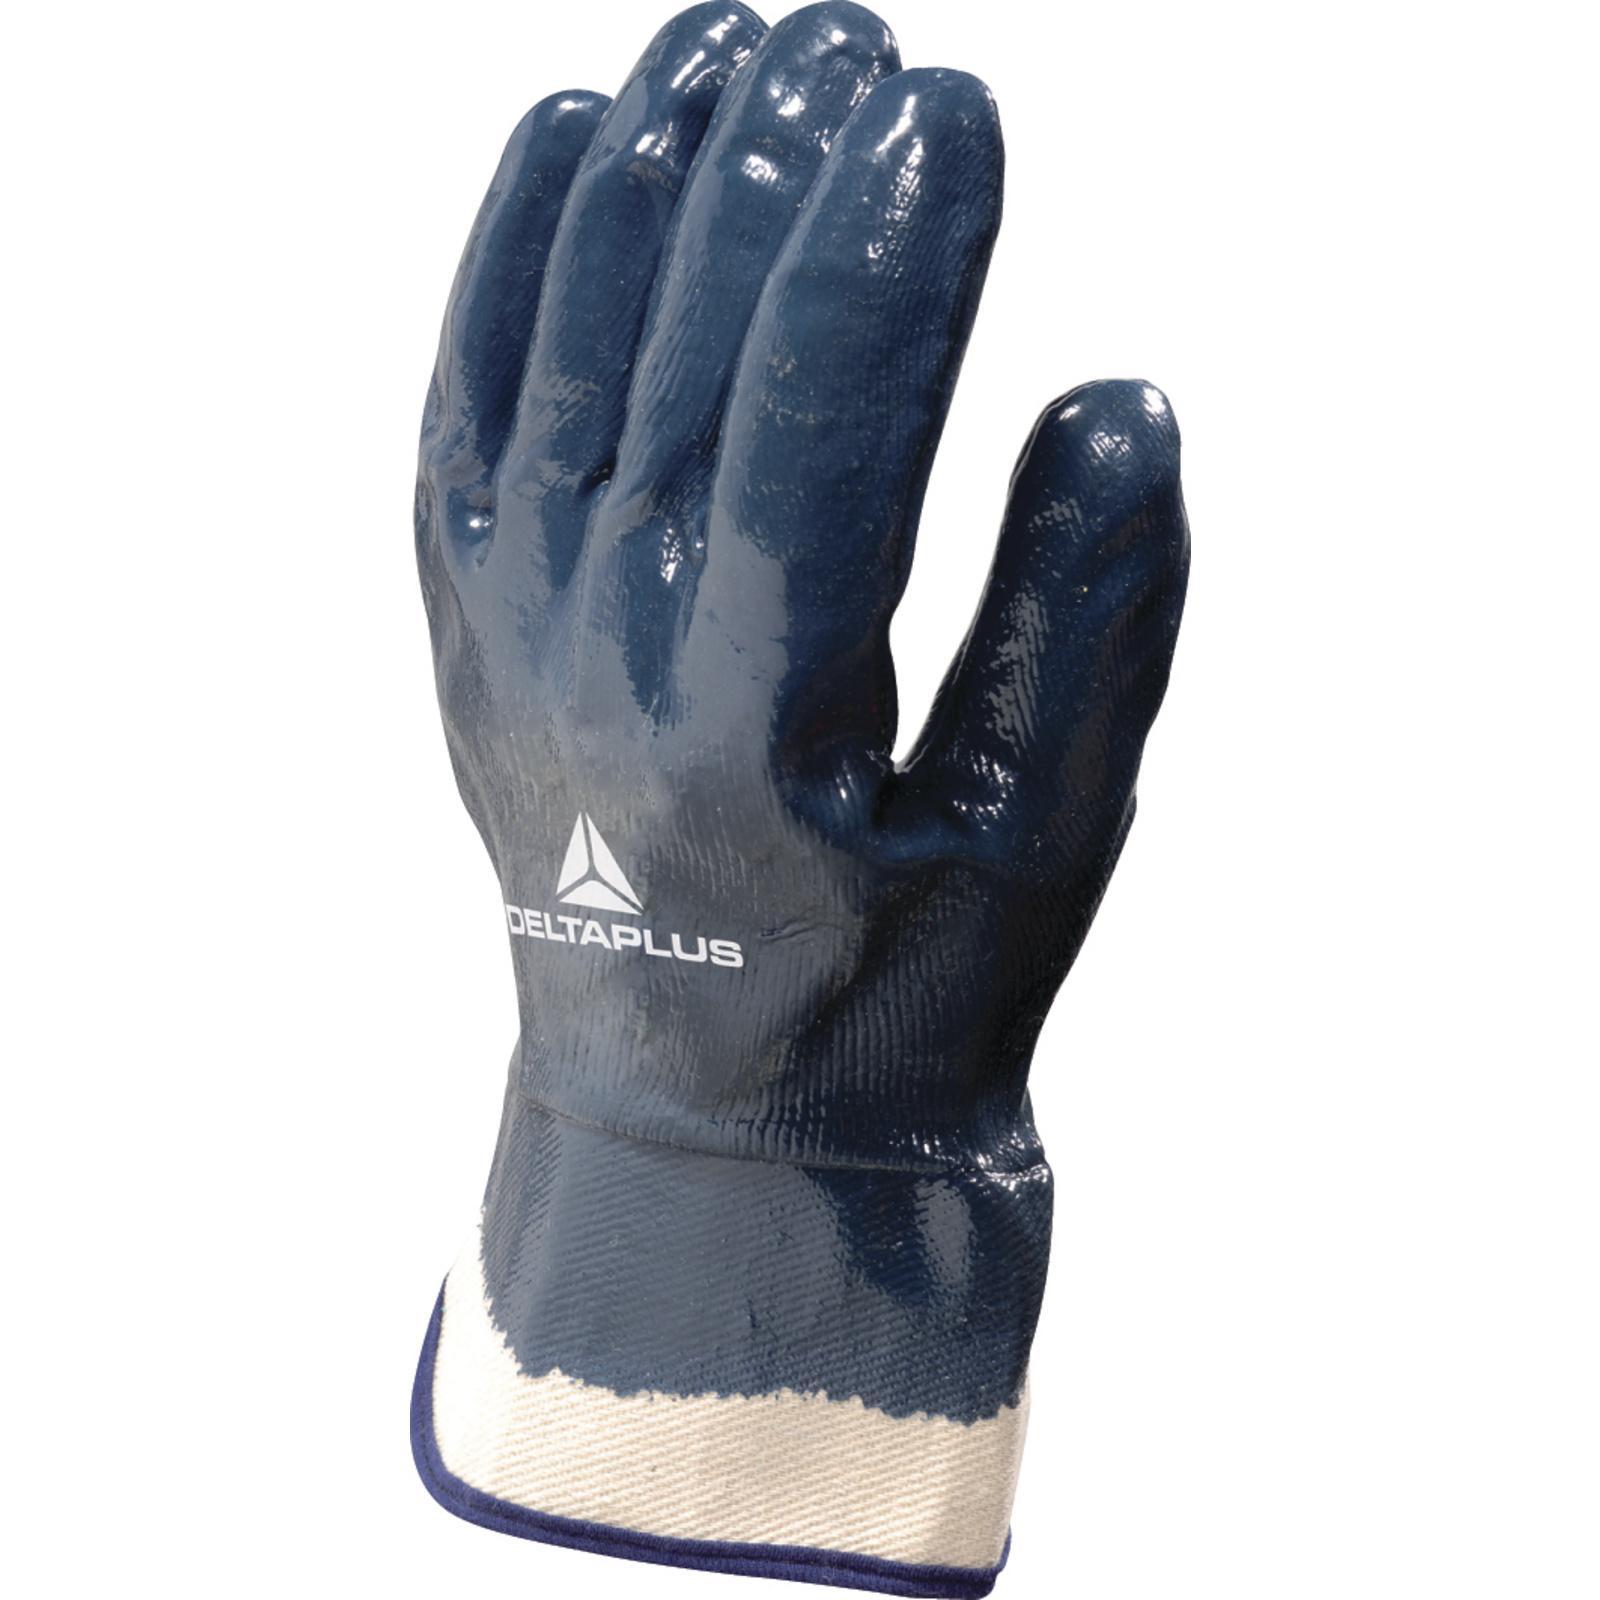 Delta Plus Venitex NI150 heavy Duty bleu nitrile sécurité gants de travail tailles 7-10